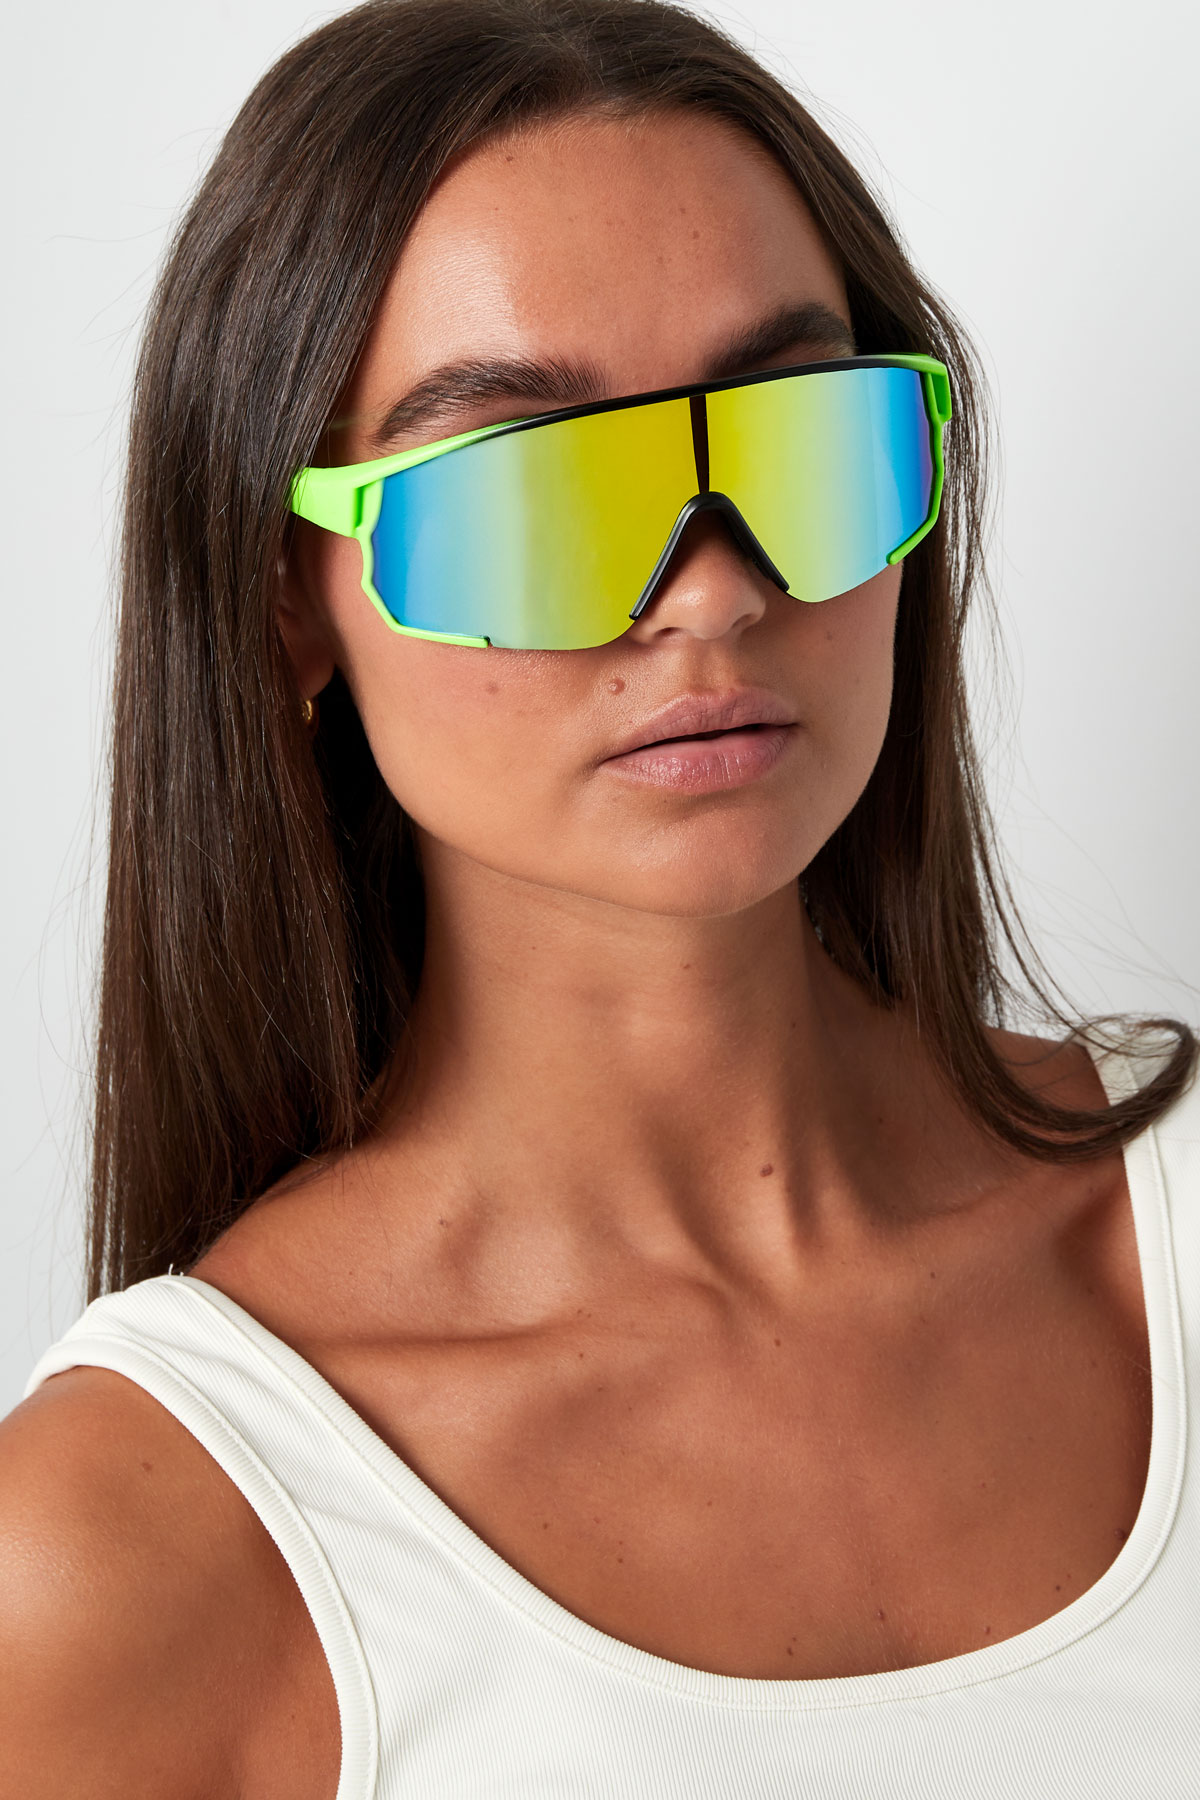 Güneş gözlüğü renkli lensler - siyah/mavi Resim5